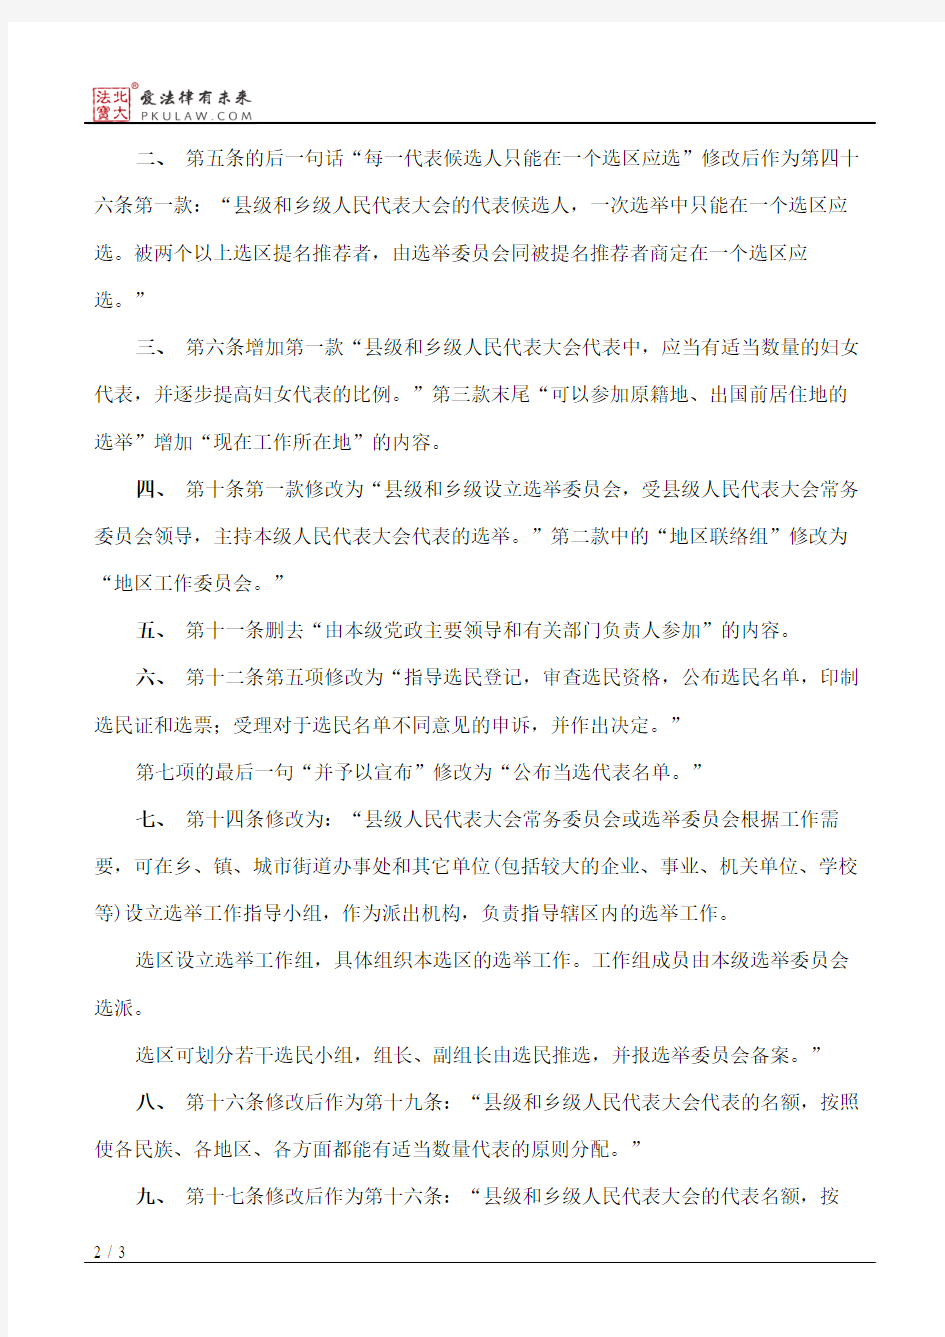 陕西省人大常委会关于修改《陕西省县乡两级人民代表大会代表选举